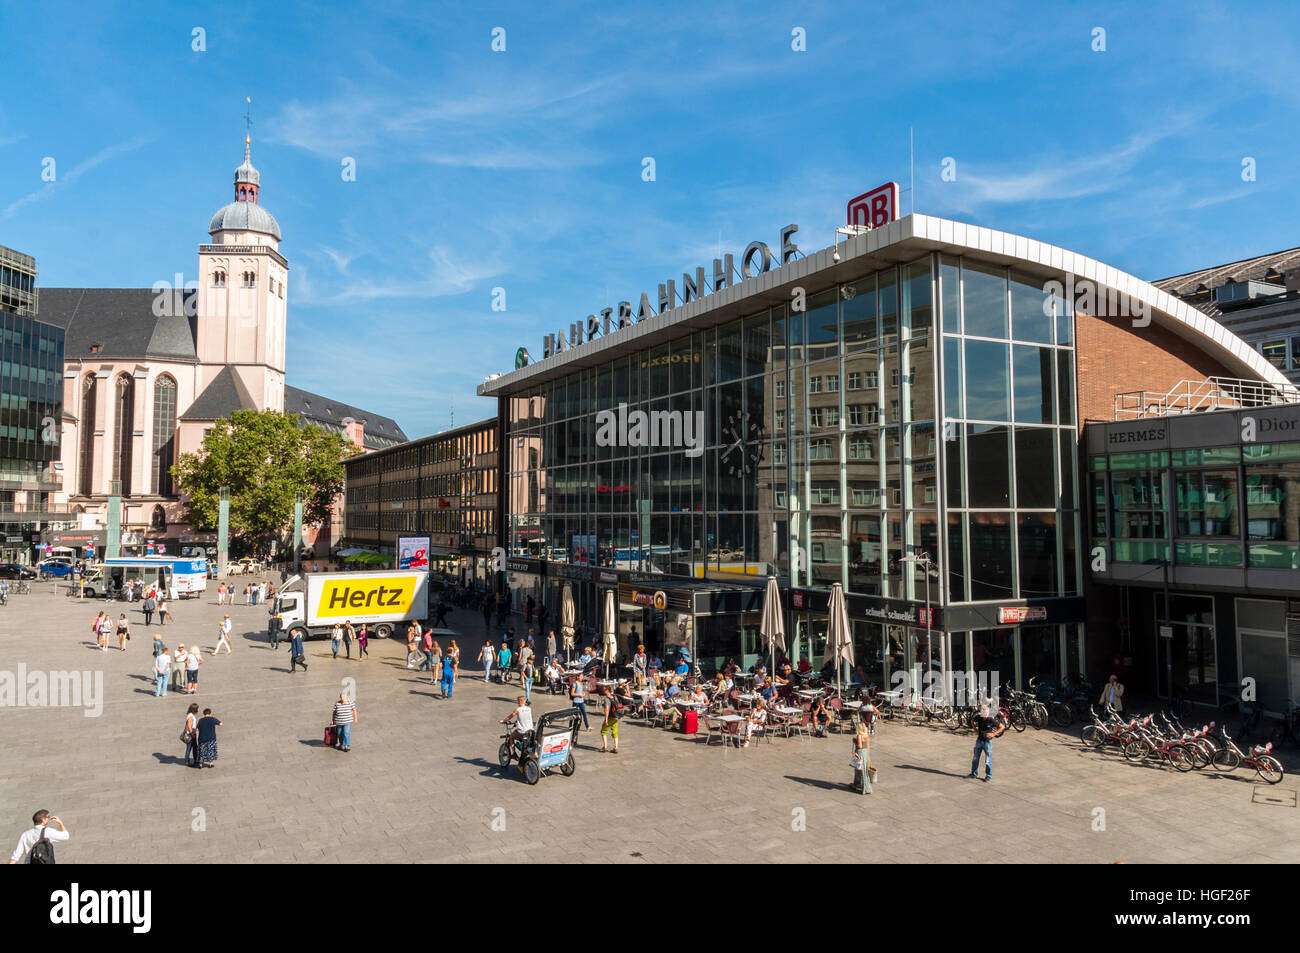 La gare principale de Cologne, vue de la cathédrale étapes, NRW, Allemagne Banque D'Images